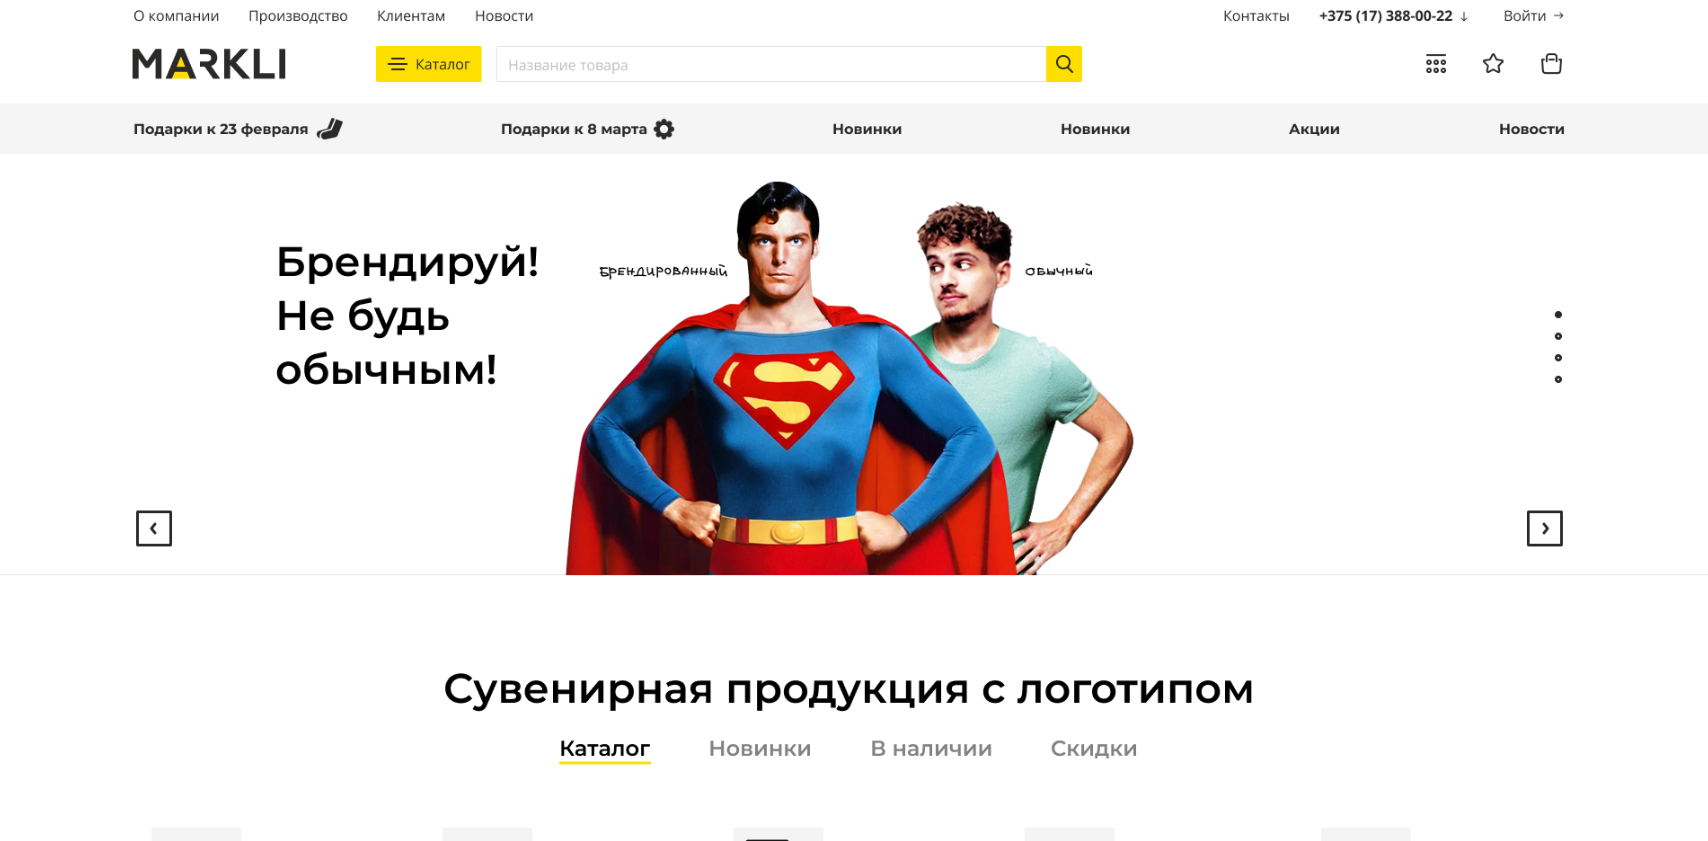 markli.by: интернет-магазин оптовой рекламной продукции